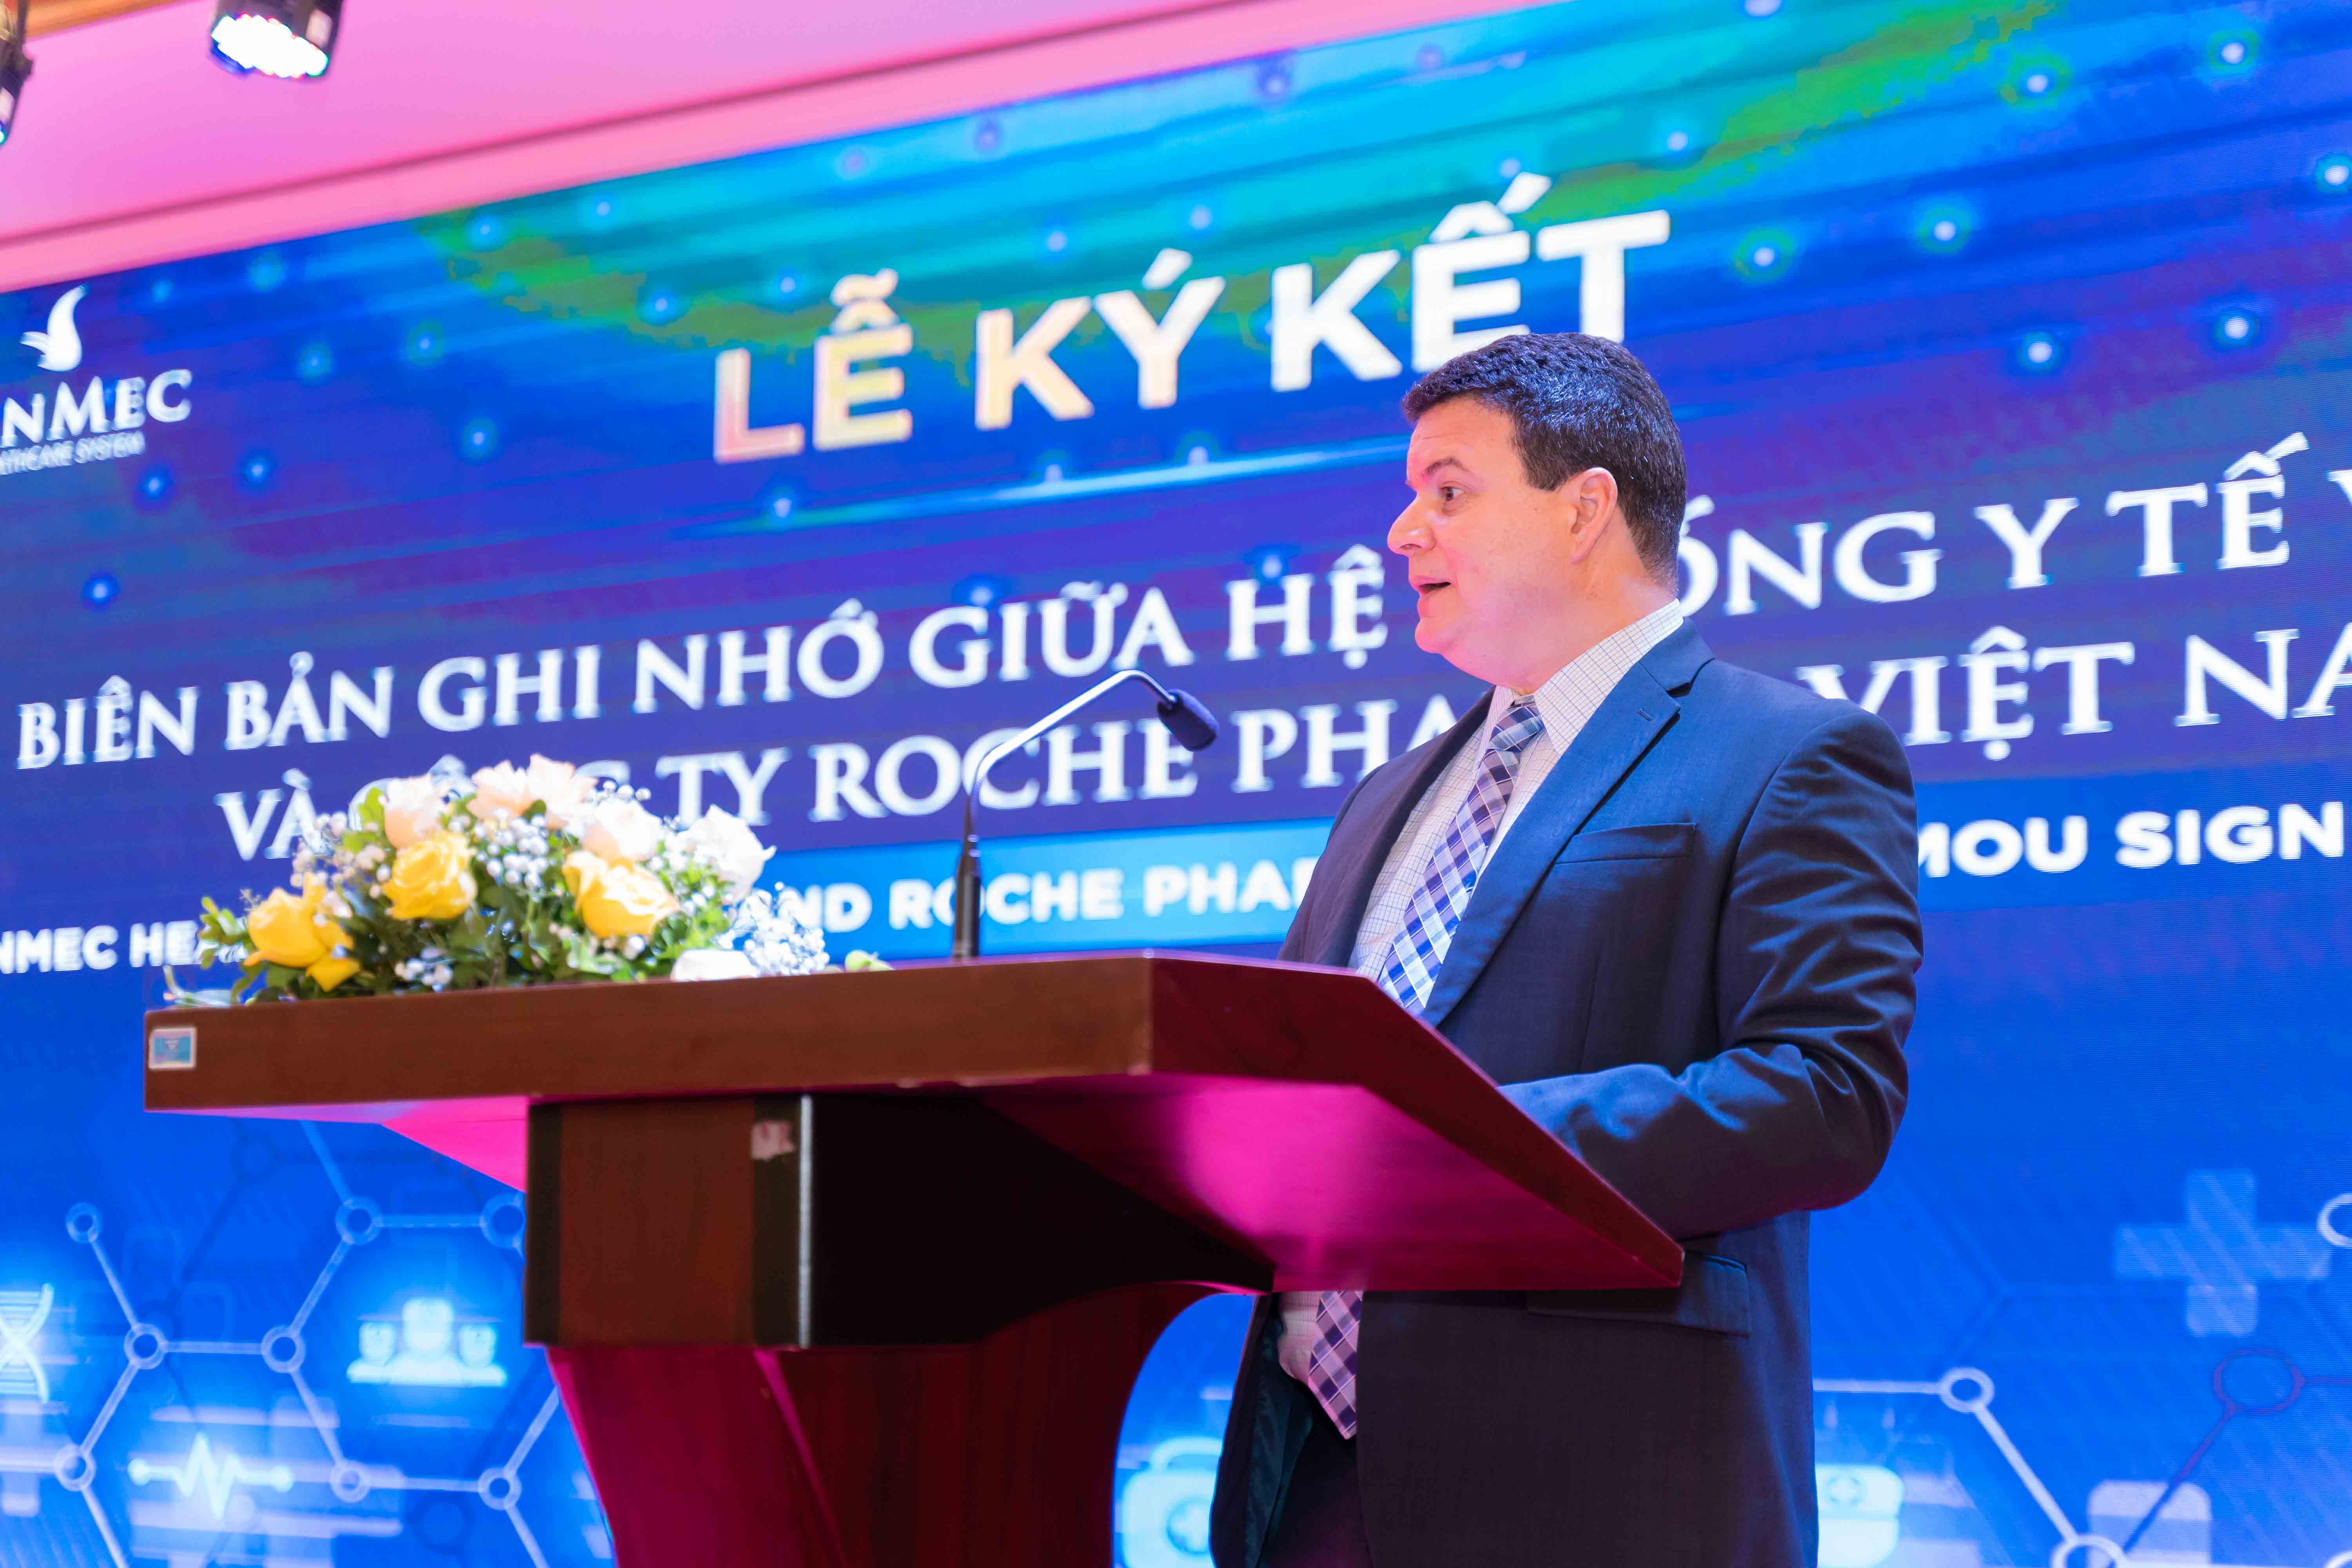 Ông Lennor Carrillo, Tổng giám đốc Roche Pharma Việt Nam